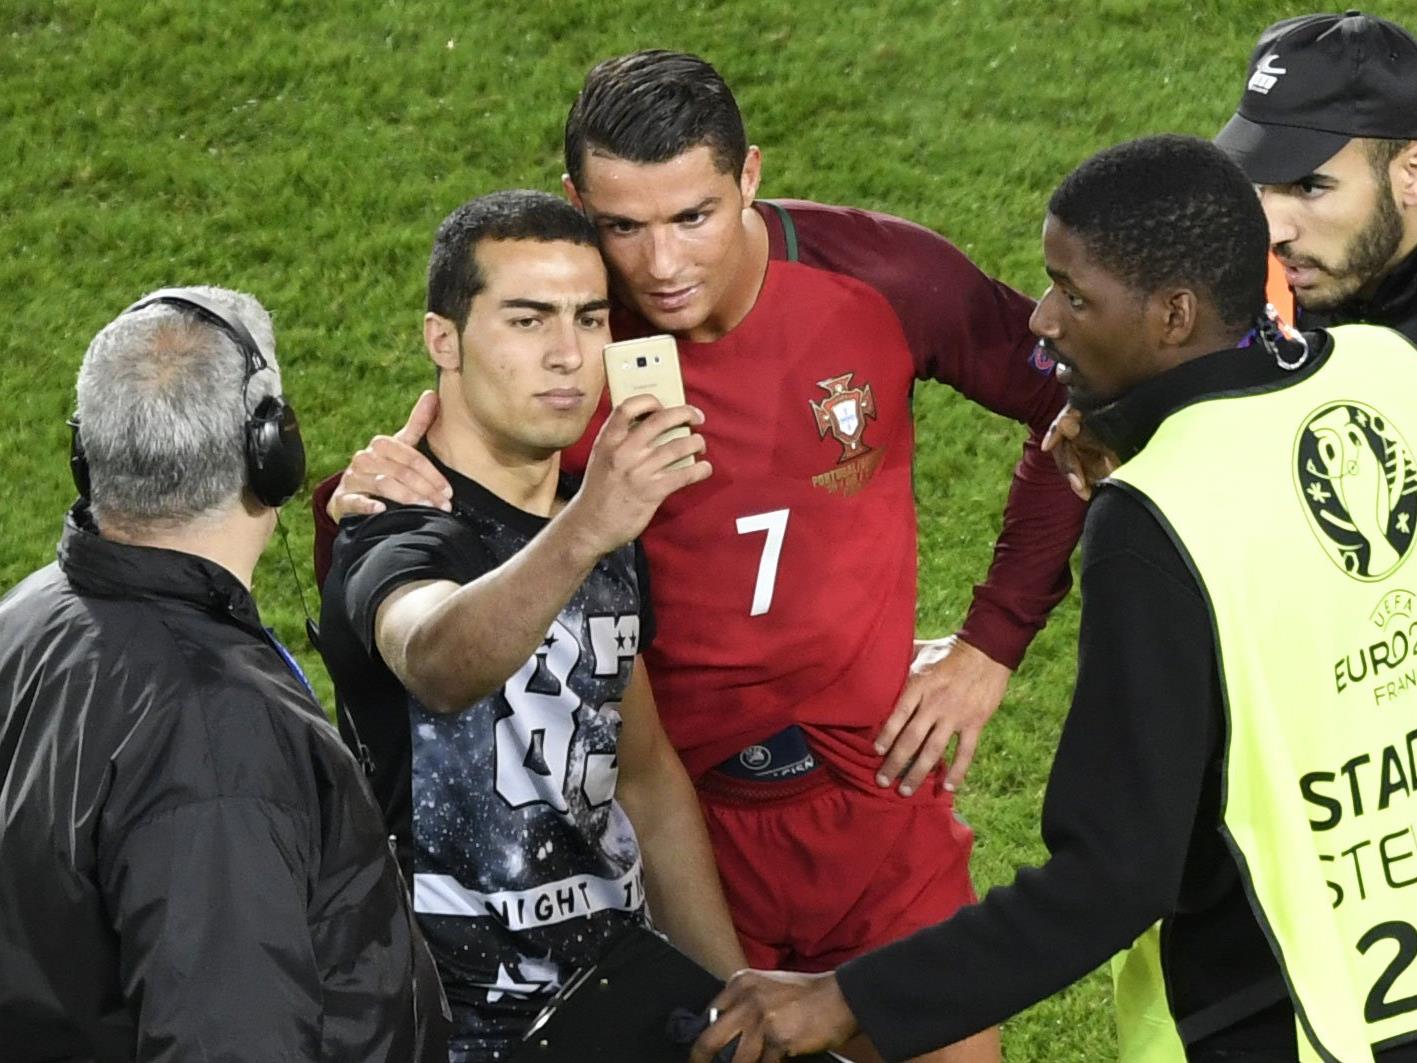 Nach einiger Selfie-Verzögerung posierte der Ronaldo-Fan ganz cool.